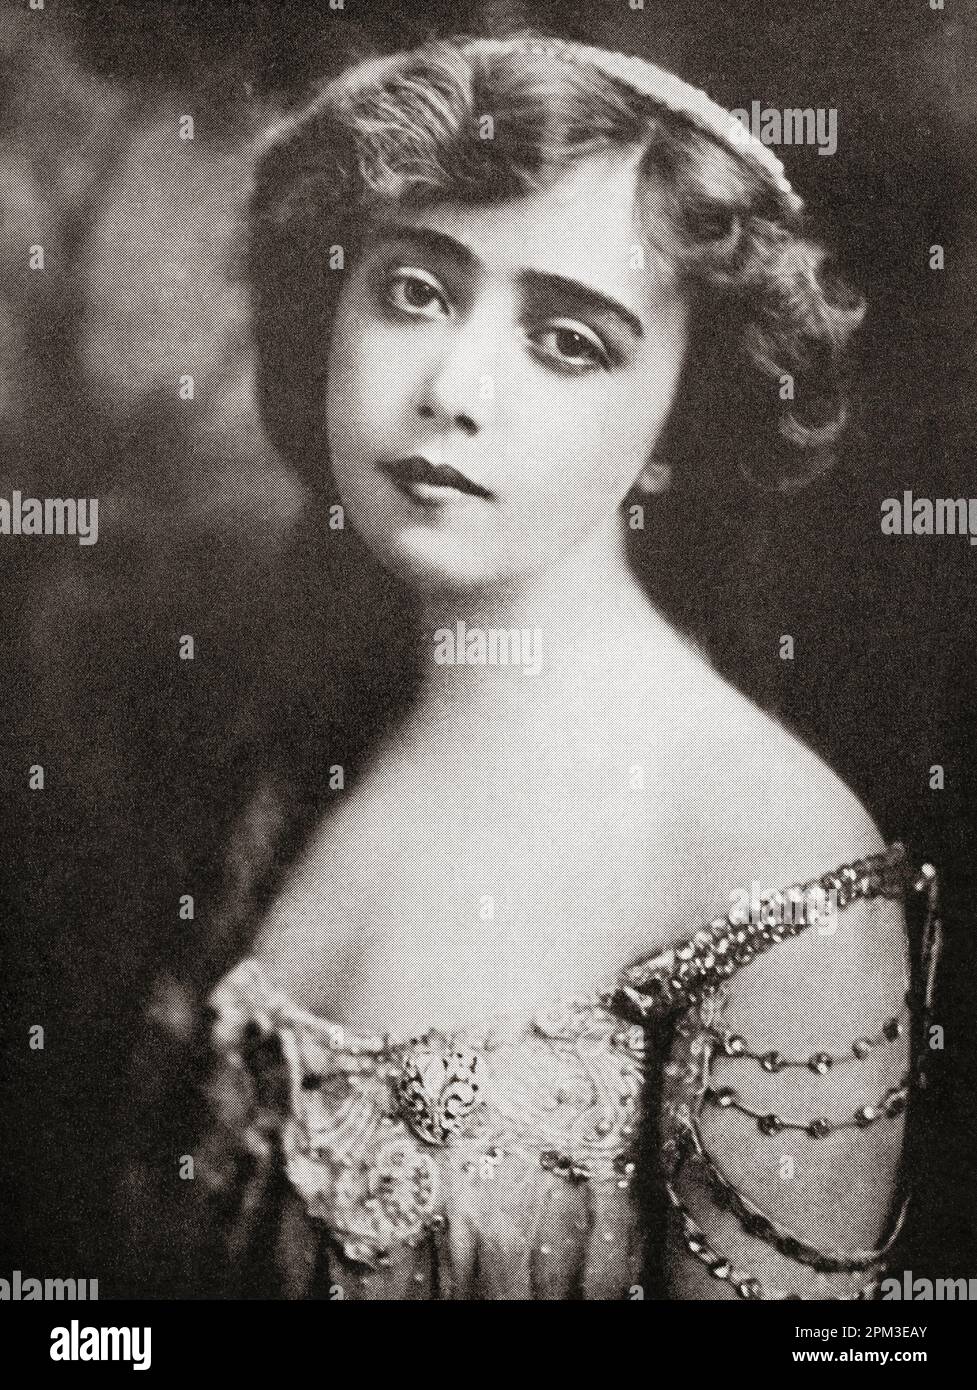 May Alvos de Sousa, 1884 - 1948. Amerikanische Sängerin und Broadway-Schauspielerin. Hier im Jahr 1900 gesehen, kurz nachdem sie Bathhouse Johns Ballade „Dear Midnight of Love“ im Chicagoer Opernhaus vorstellte. Von Lords of the Levee, veröffentlicht 1943. Stockfoto